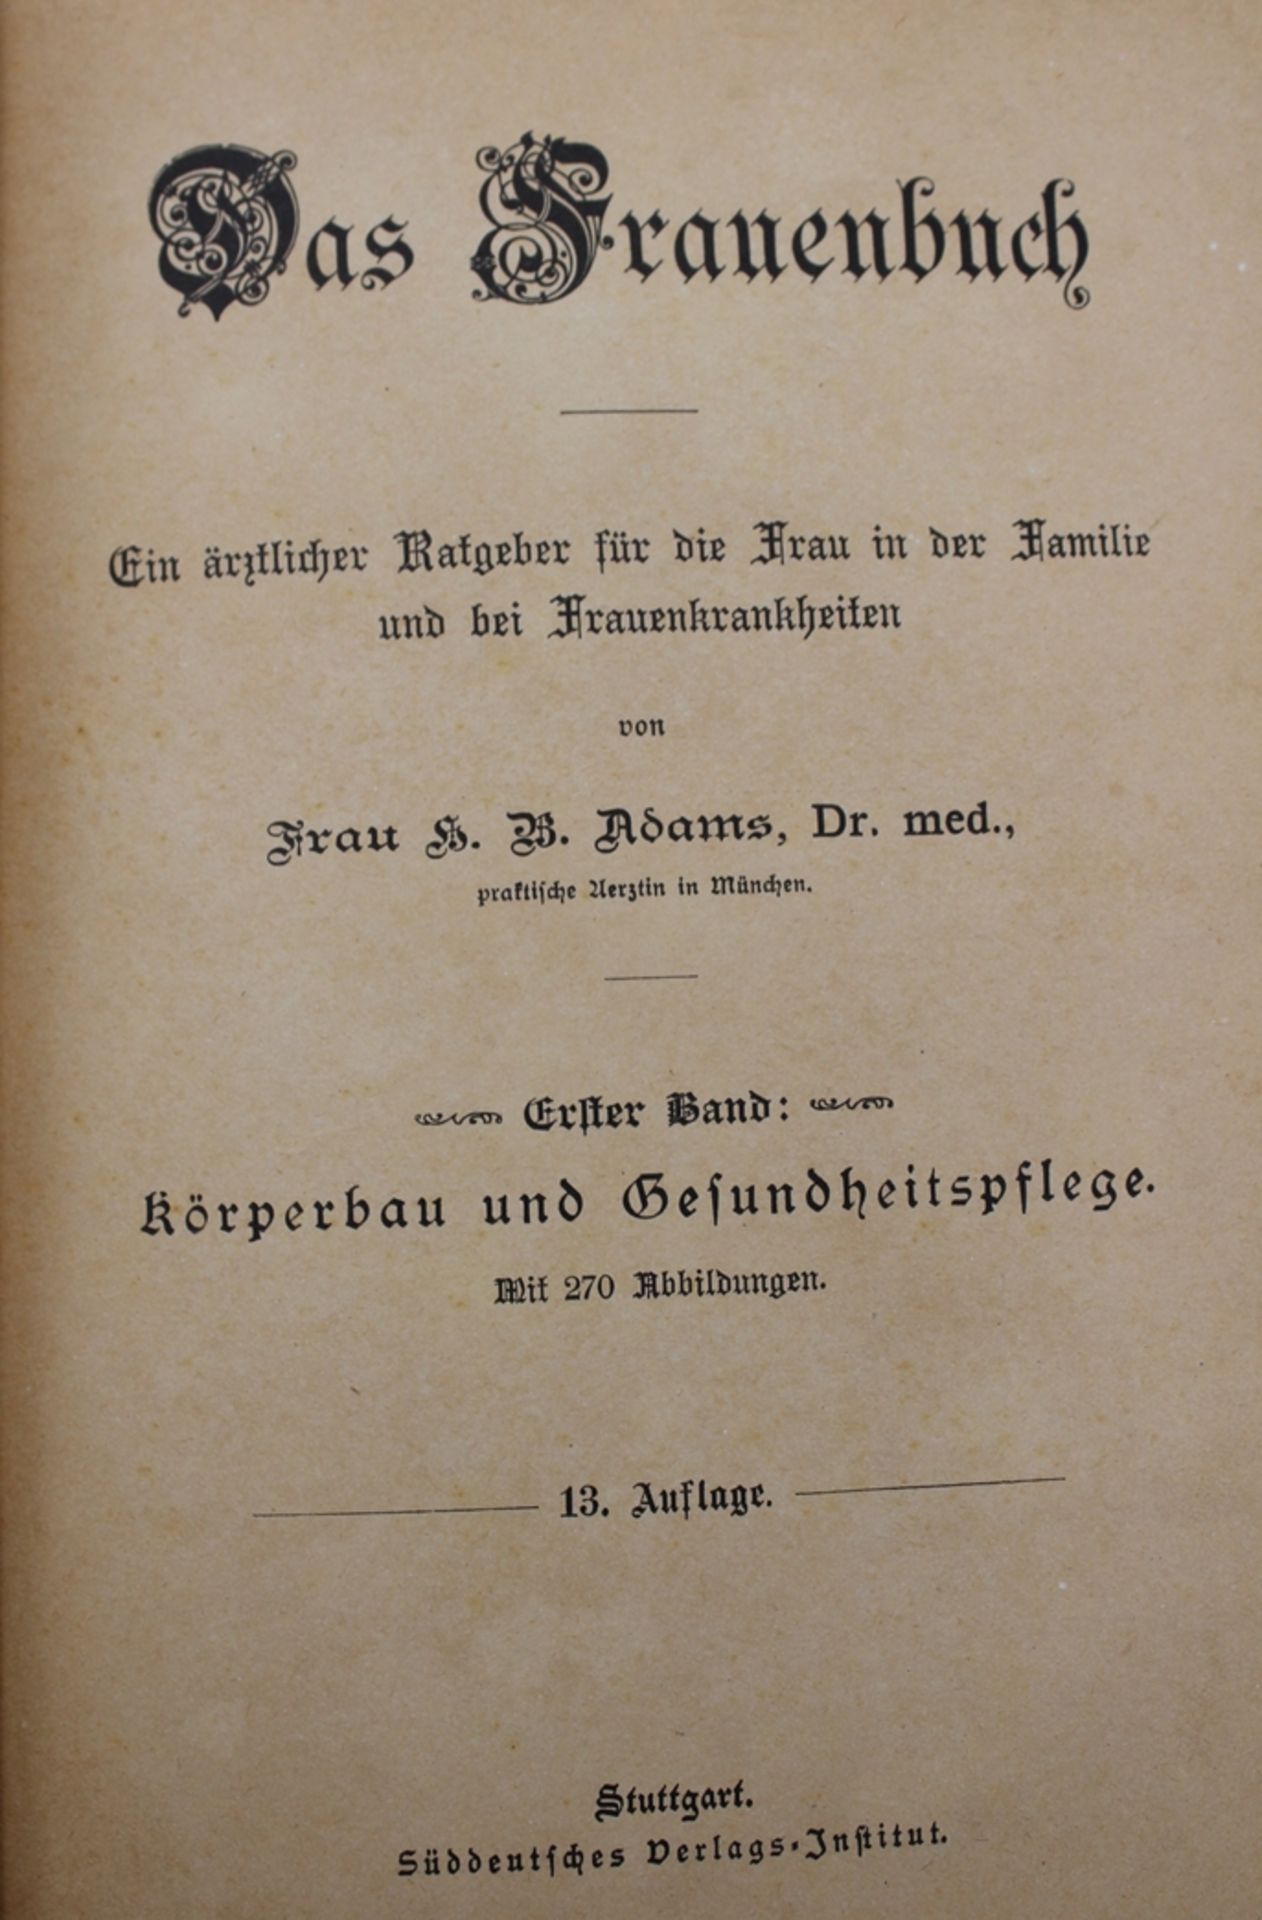 Dr, med. Adams, Das Frauenbuch - Ein ärztlicher Ratgeber für die Frau...., 1. Band, Stuttgartum 191 - Image 2 of 4